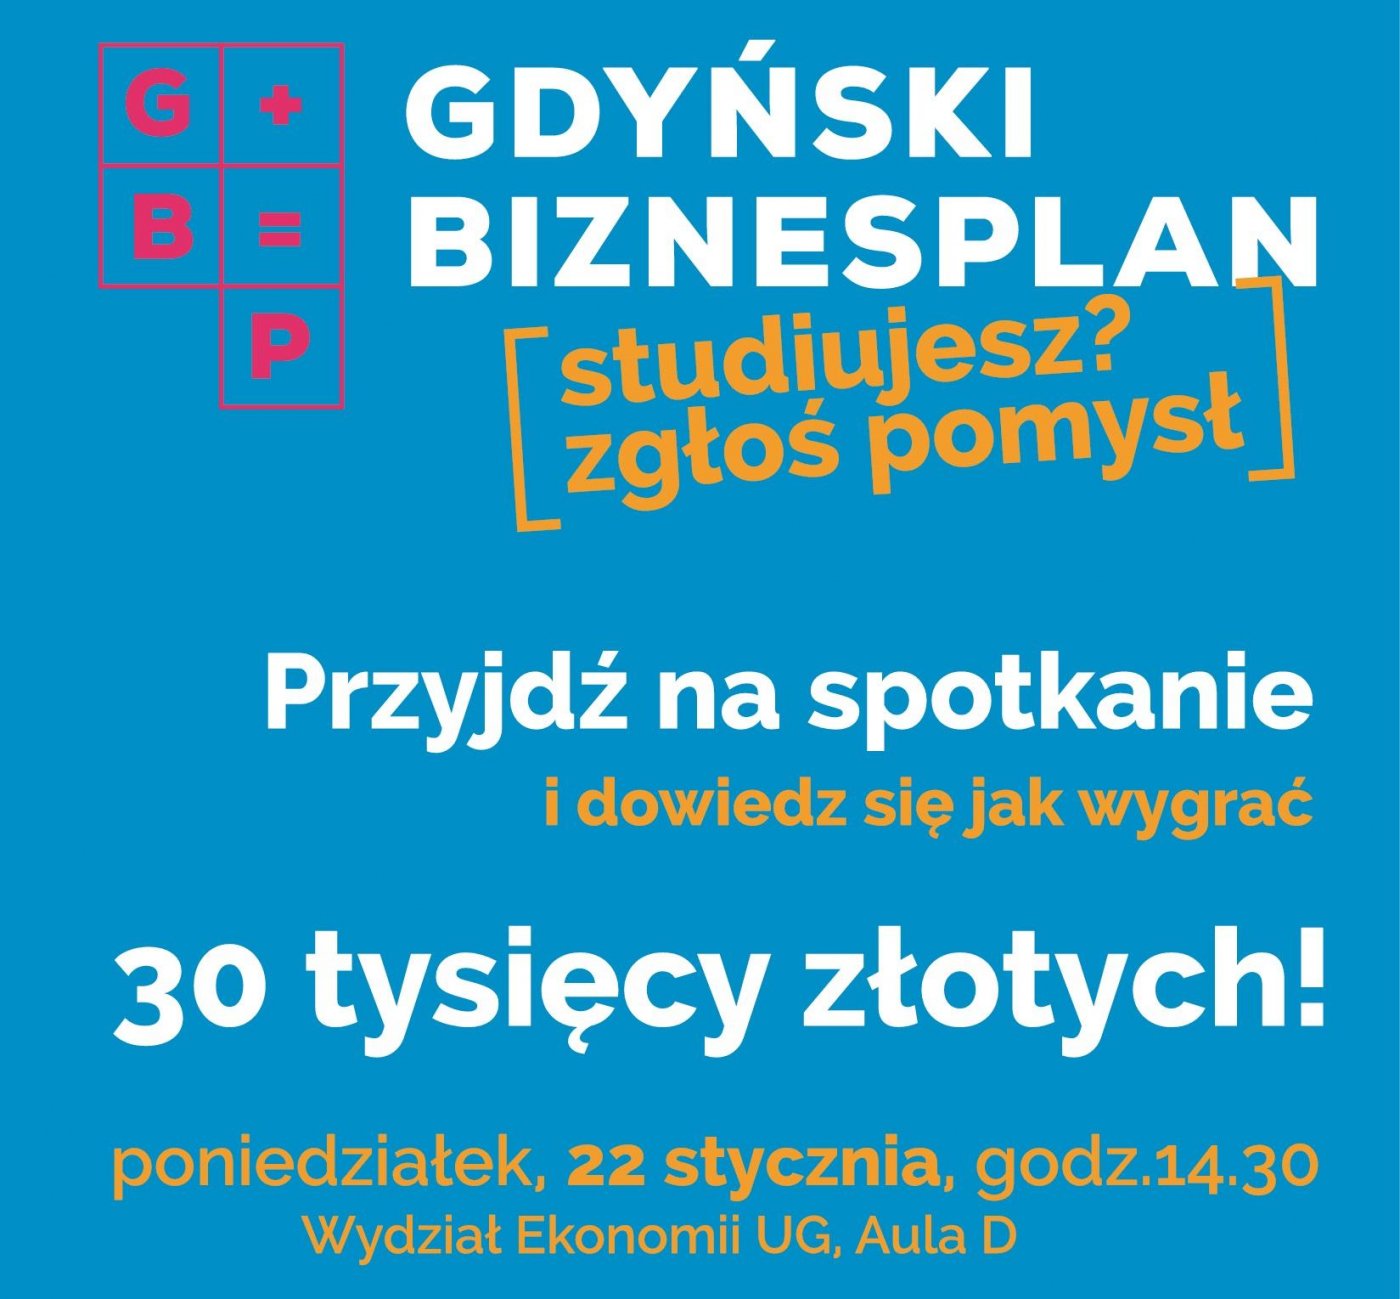 Gdyński Biznesplan 2018 // fot. materiały prasowe